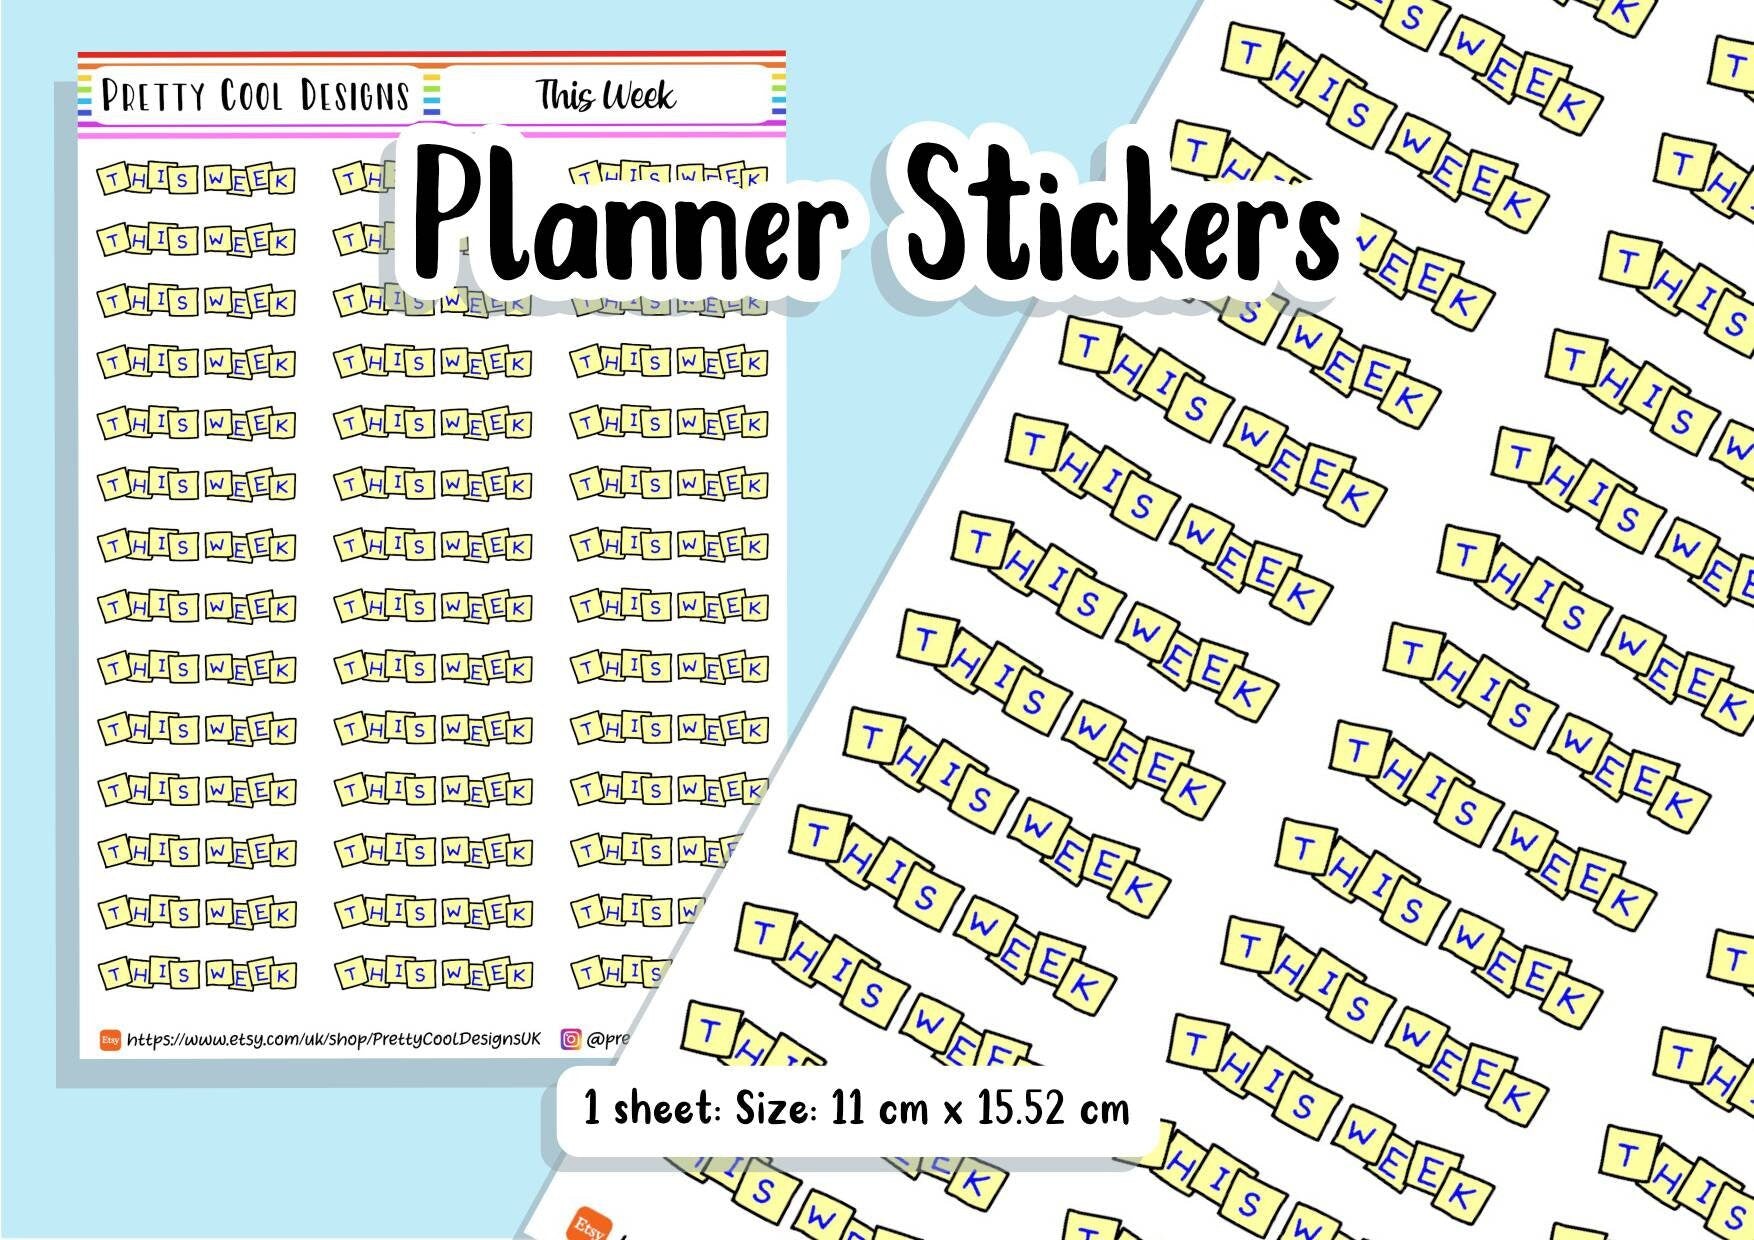 This Week Teacher Planner Stickers UK - 1 Sheet